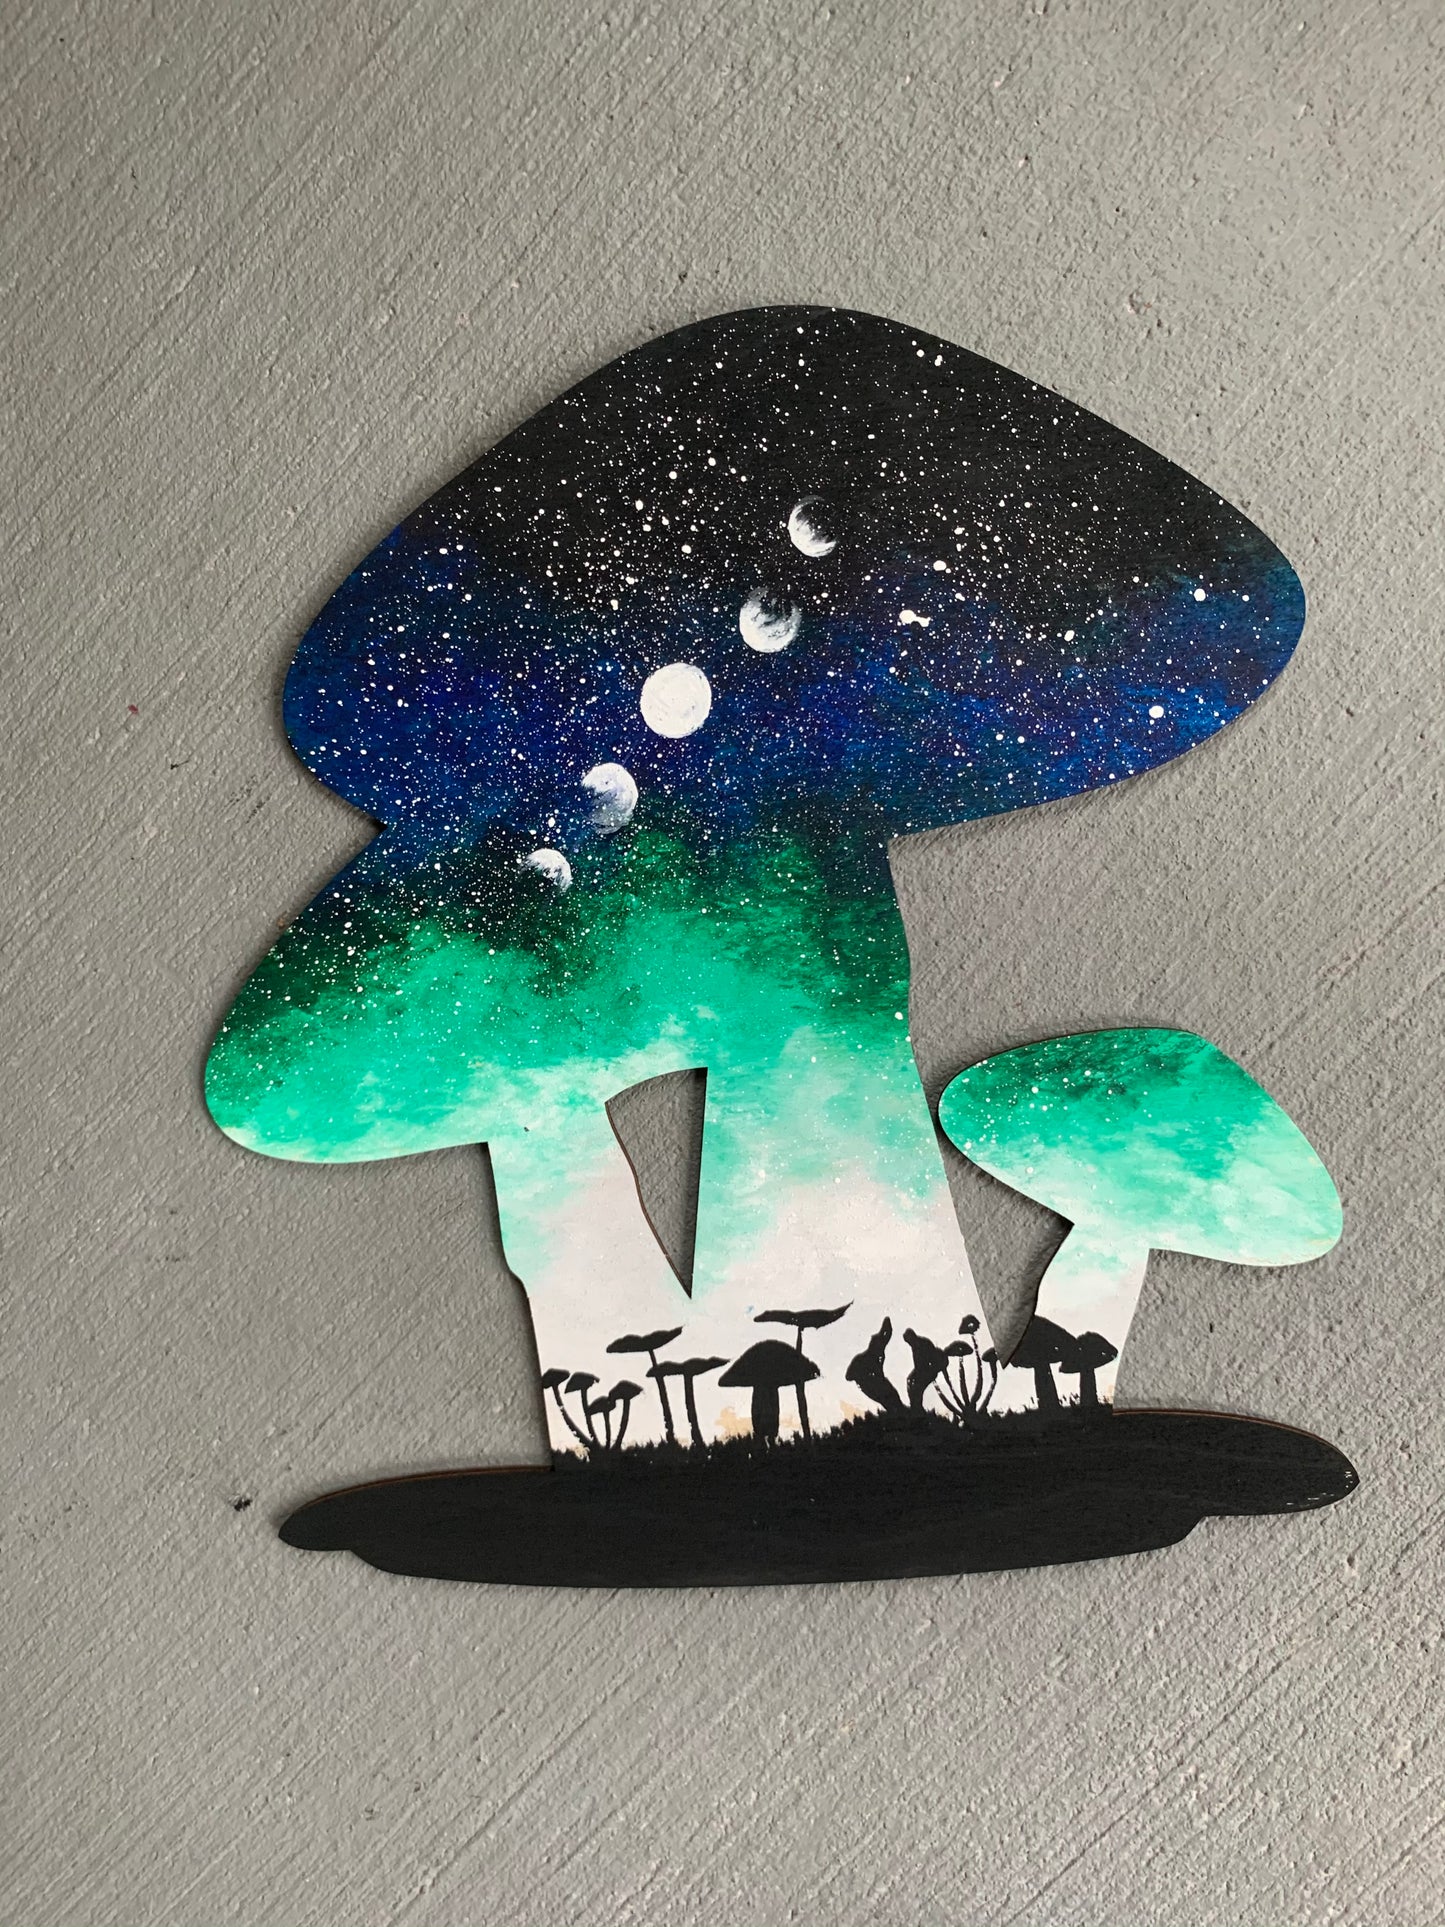 Mushroom moon phases wood cutout painting